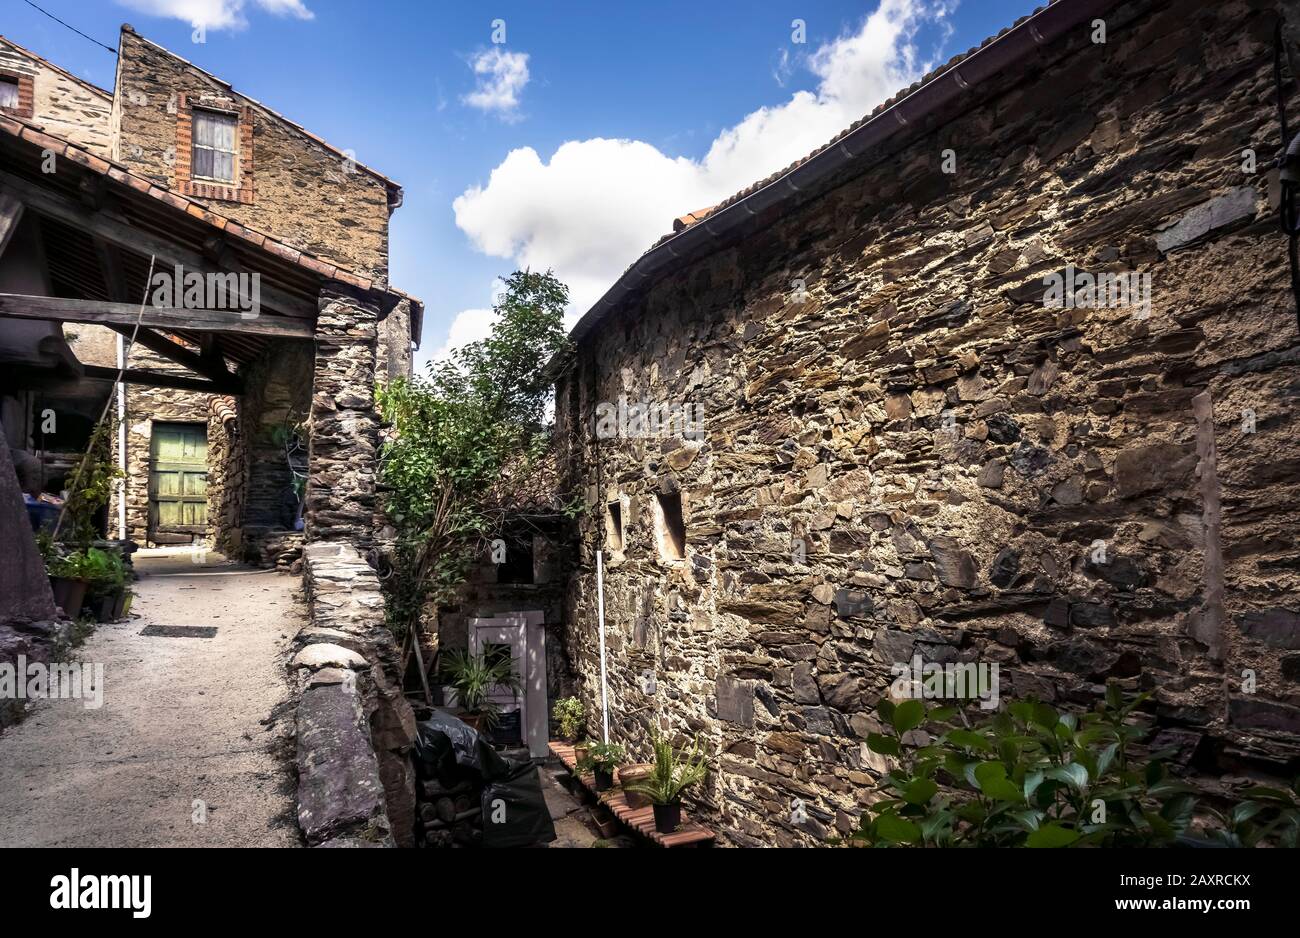 Dorf in der Nähe von Roquebrun. Der Weiler liegt direkt auf dem schwarzen Schiefer des Berges. Die Häuser bestehen aus demselben Material. Befindet sich in der reg Stockfoto